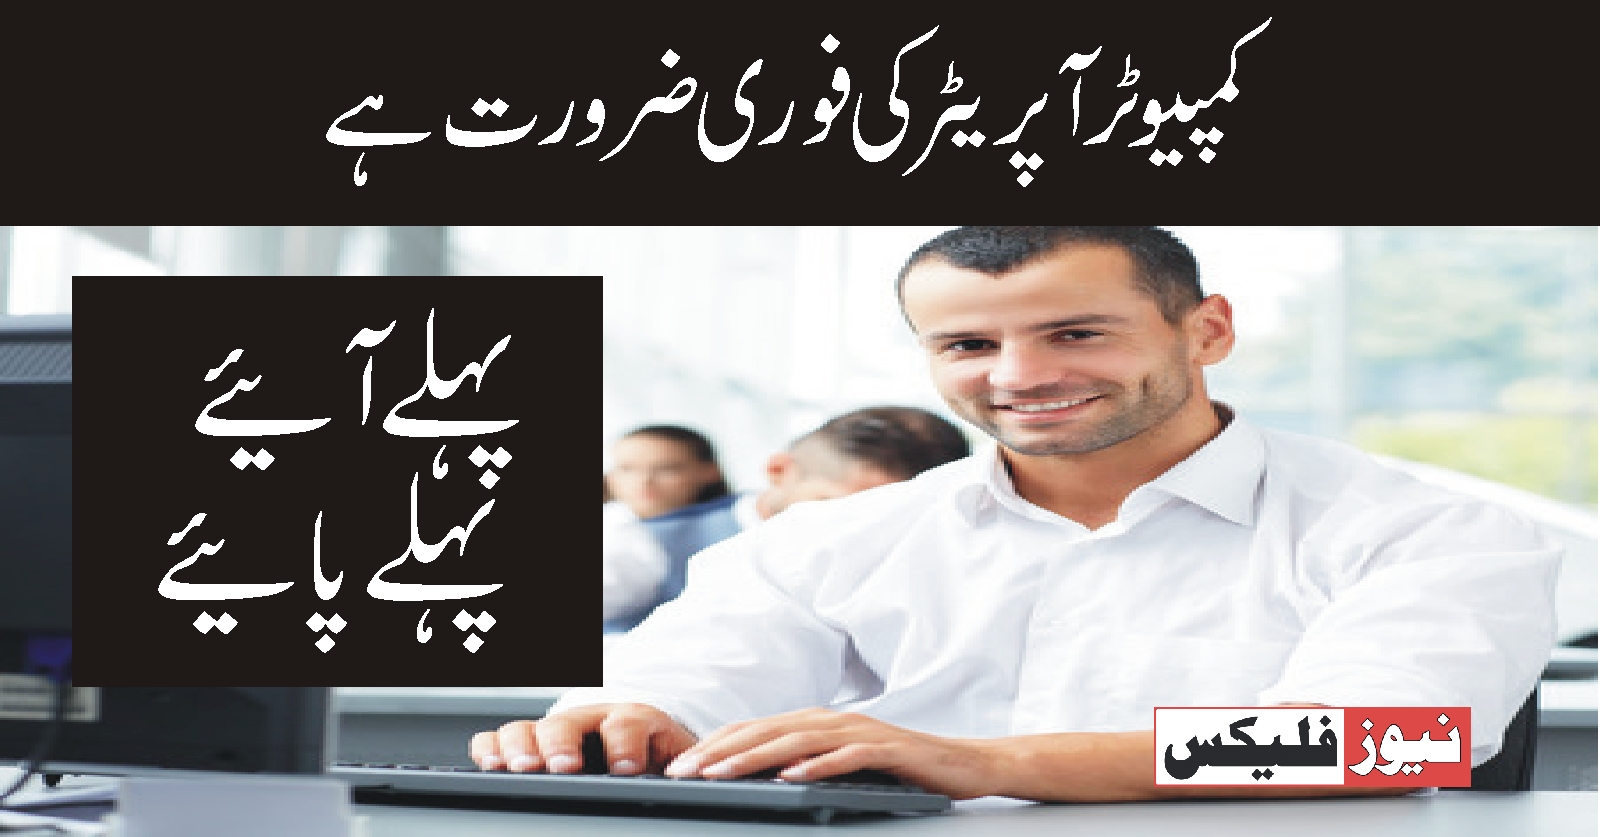 کمپیوٹر آپریٹر * اسلام آباد میں آپریٹر کی نوکریوں پر اپلائی کریں